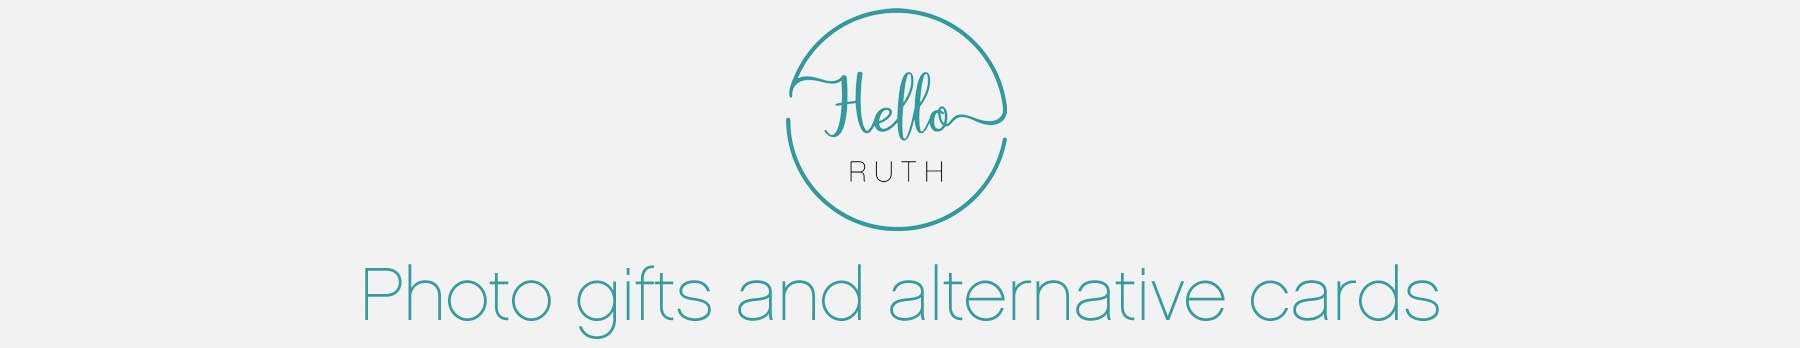 Hello Ruth